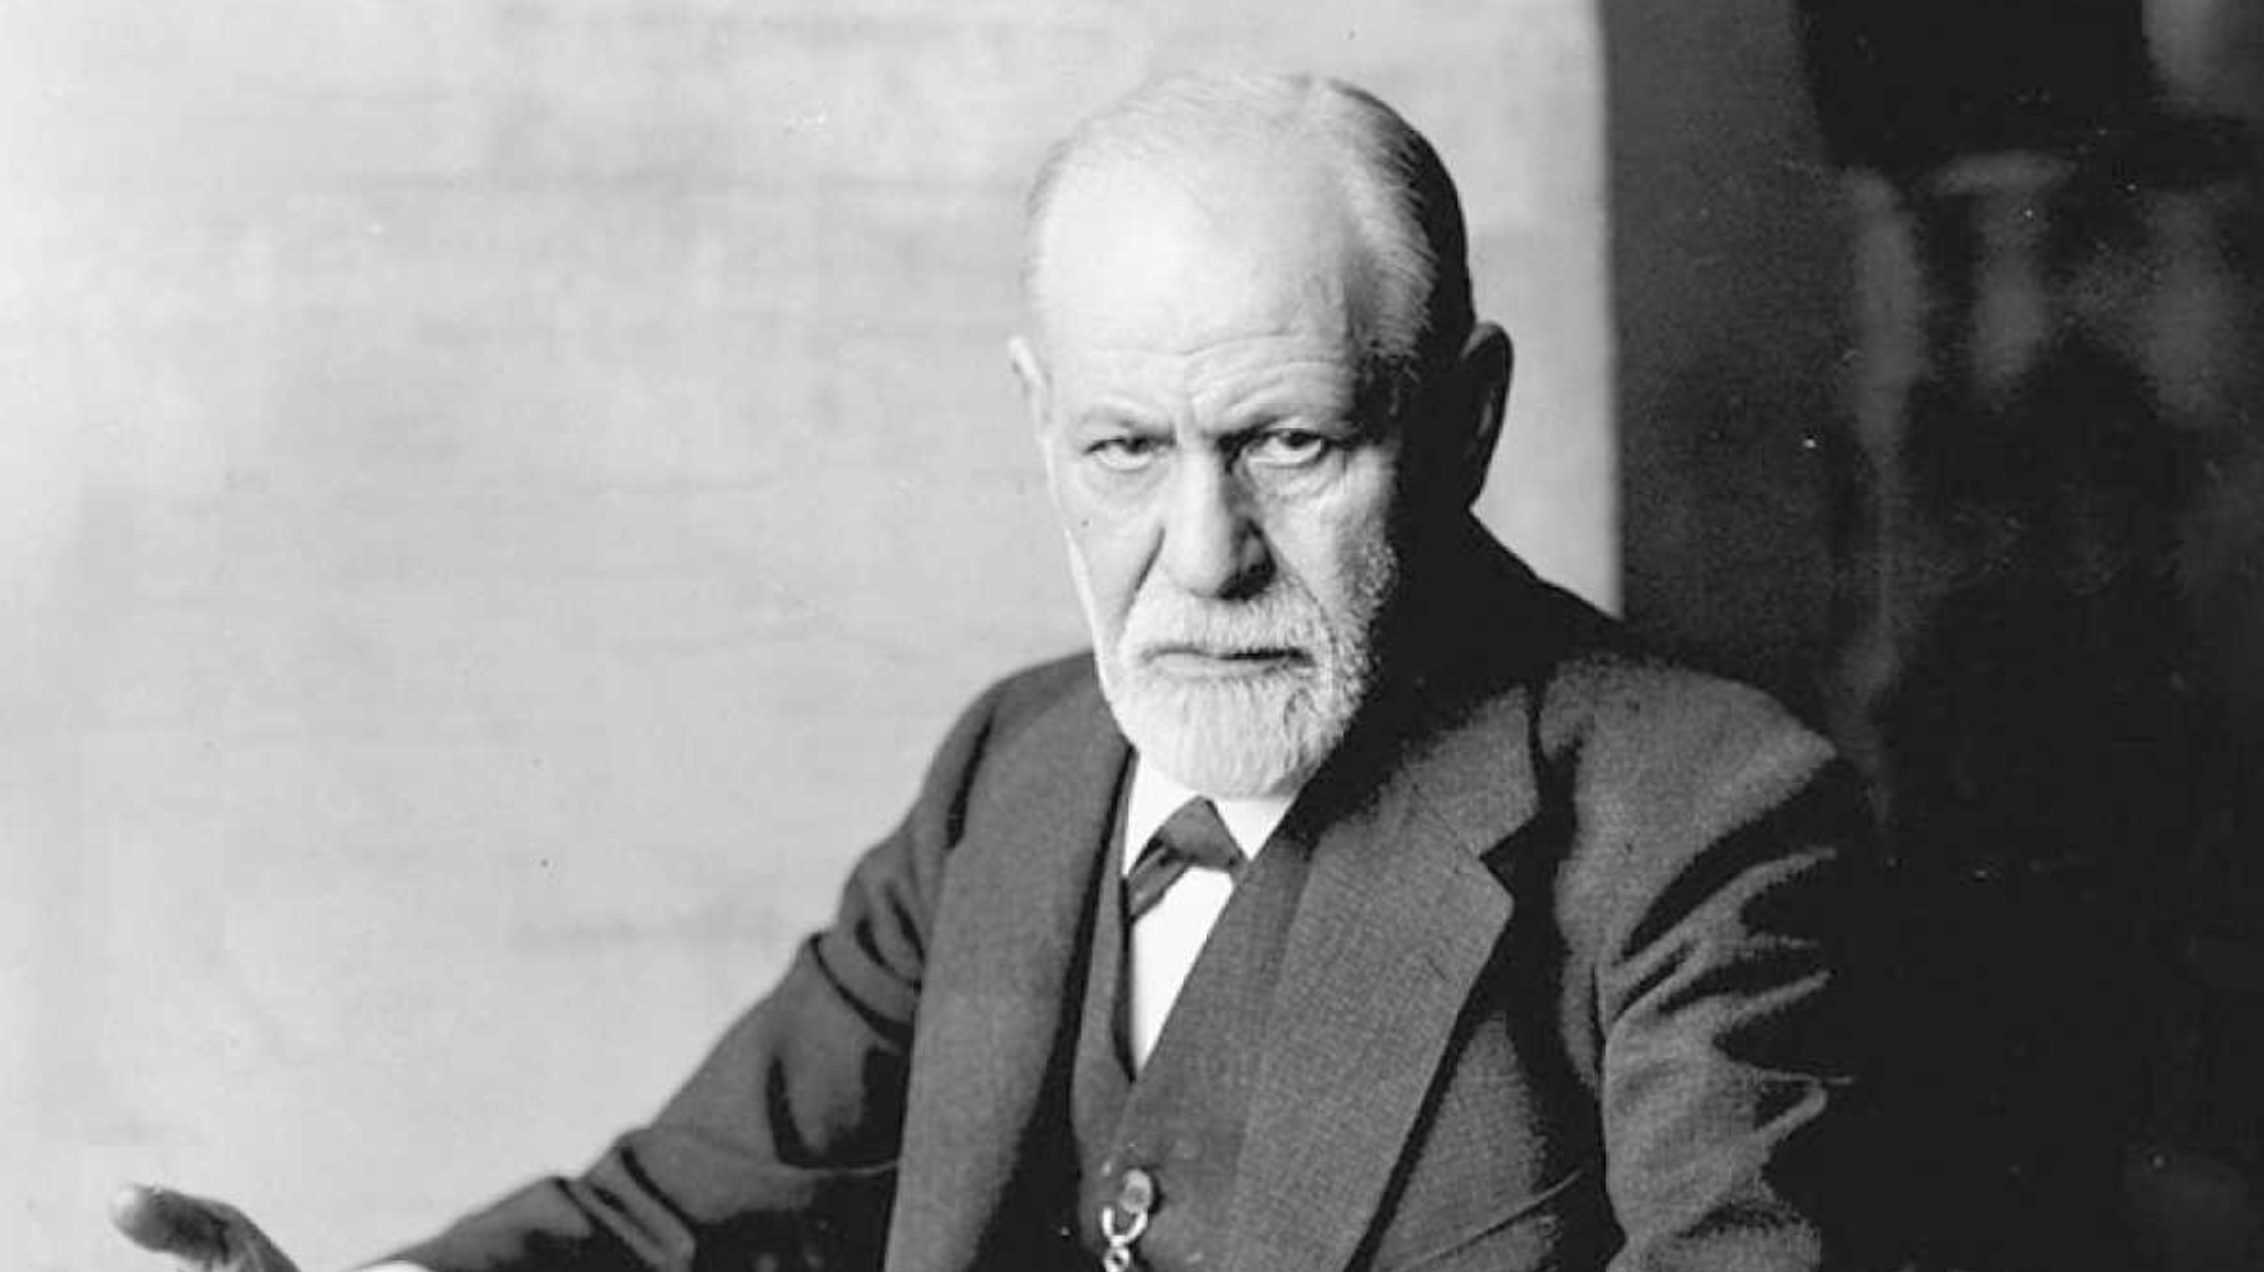 Série sobre Sigmund Freud estreia em Março na Netflix